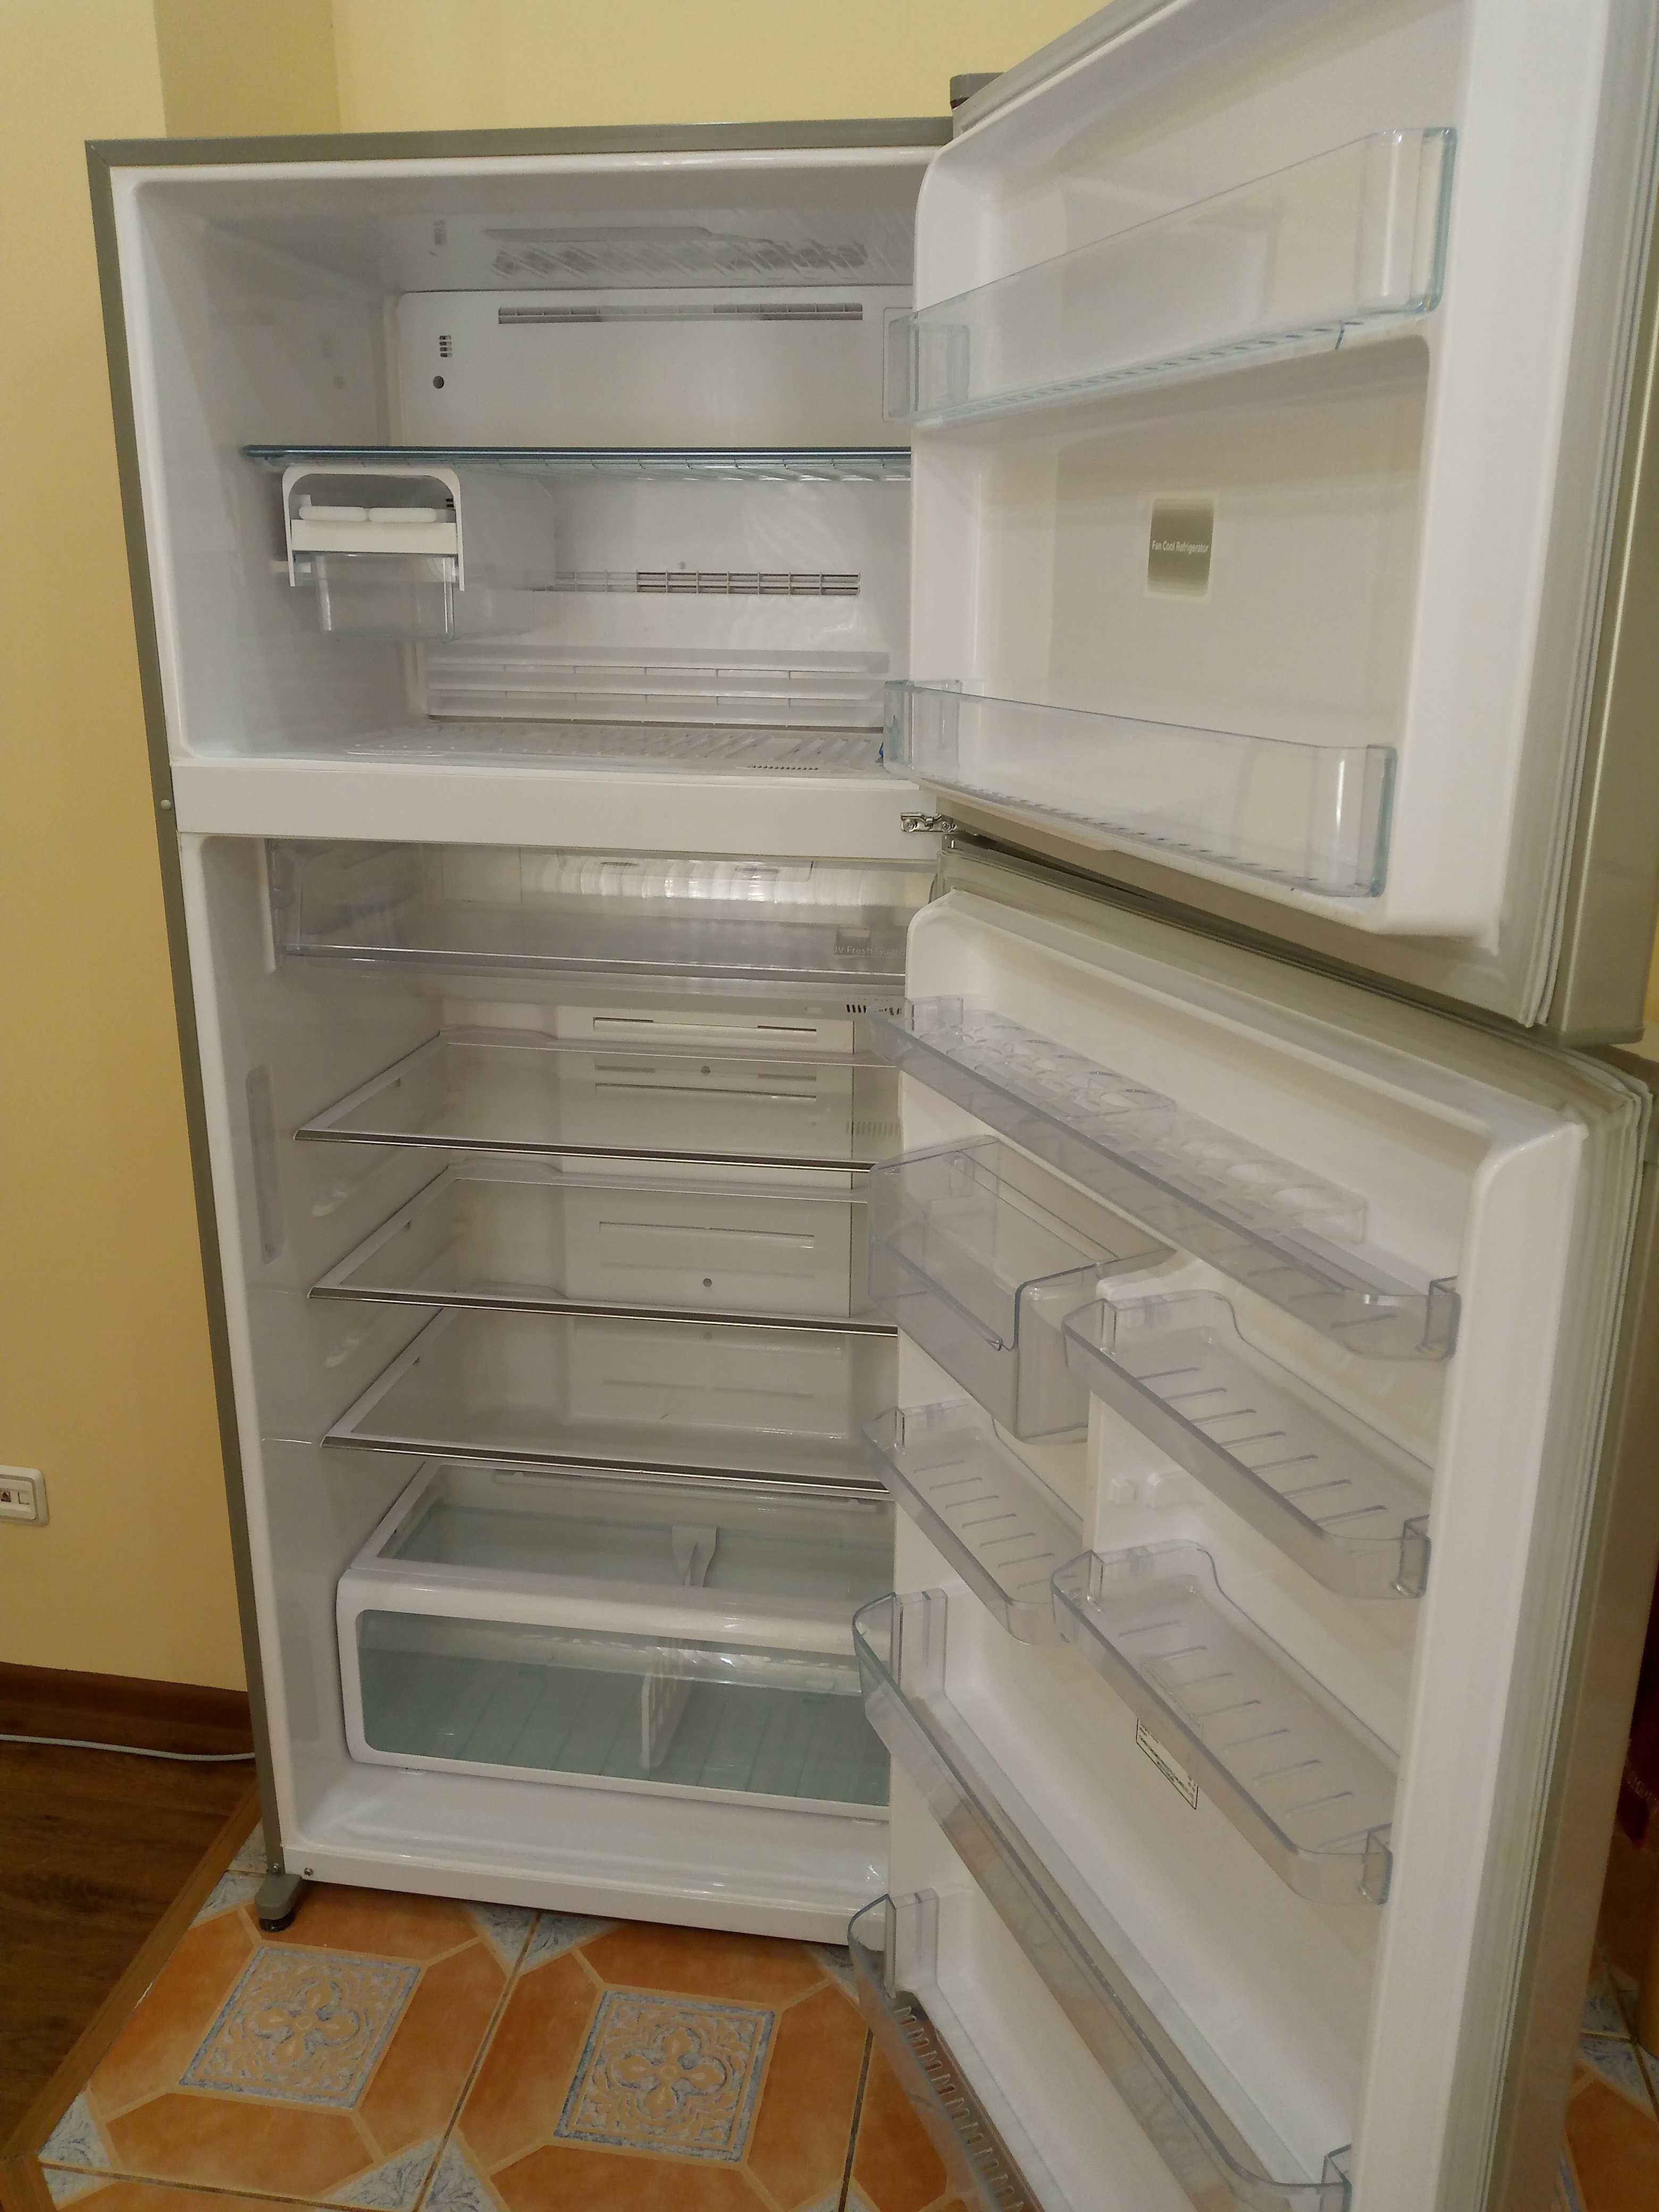 Большой инверторный холодильник TOSHIBA. Объем 608 литров